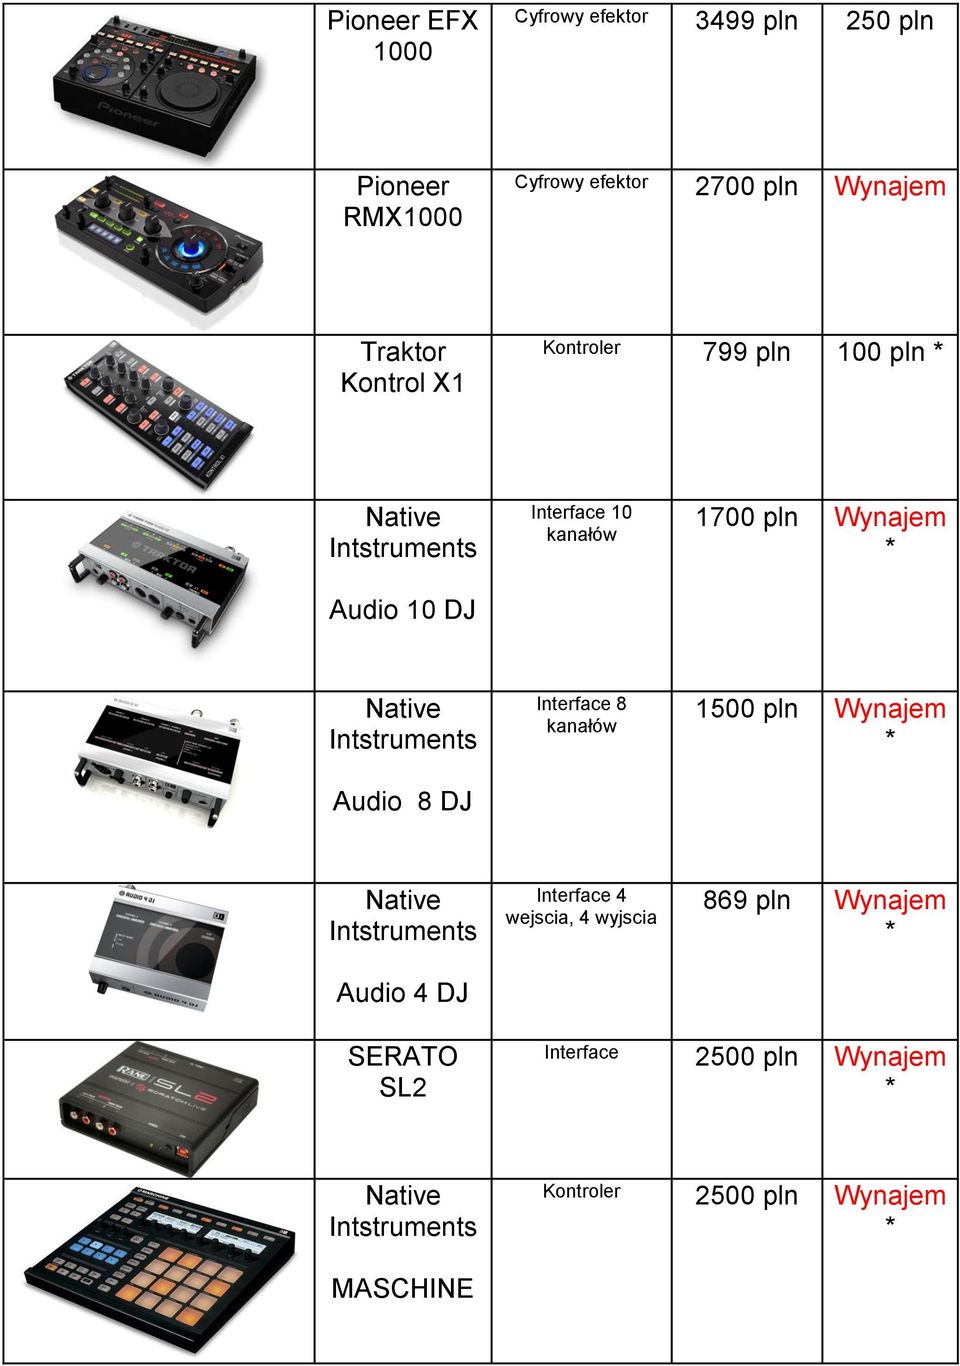 Wynajem Audio 8 DJ Interface 8 kanałów 1500 pln Wynajem Audio 4 DJ Interface 4 wejscia, 4